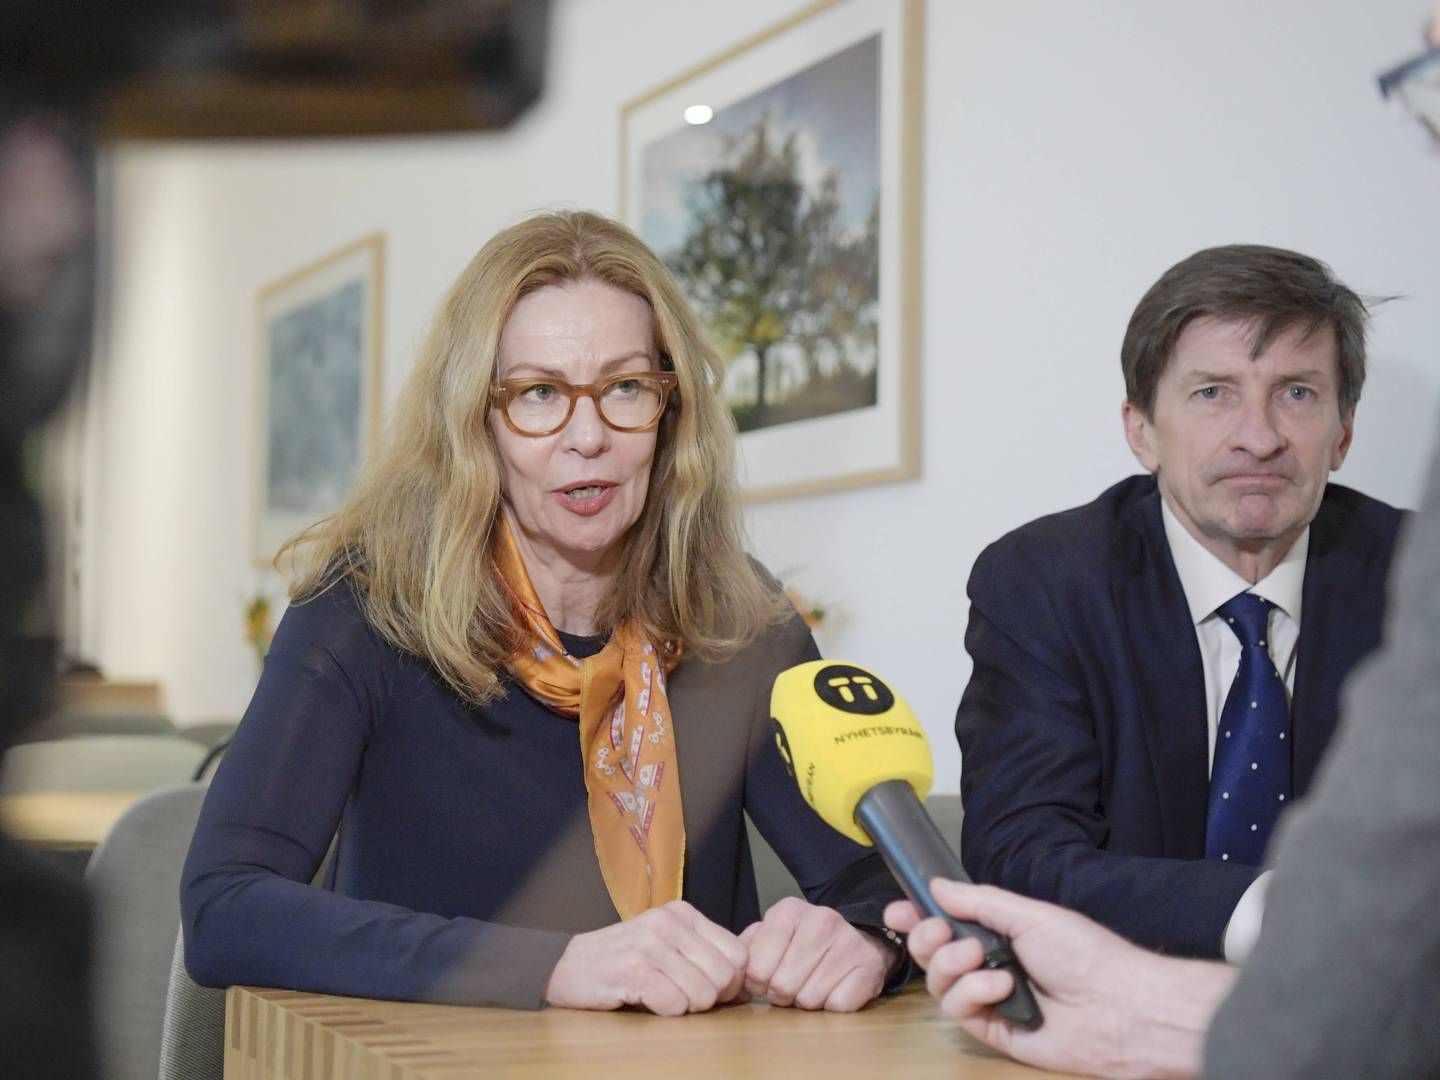 I mars 2019 var Birgitte Bonnesen fortsatt konsernsjef for Swedbank og Lars Idermark fortsatt styreleder. Når er begge sparket. | Foto: Janerik Henriksson/TT/NTB Scanpix